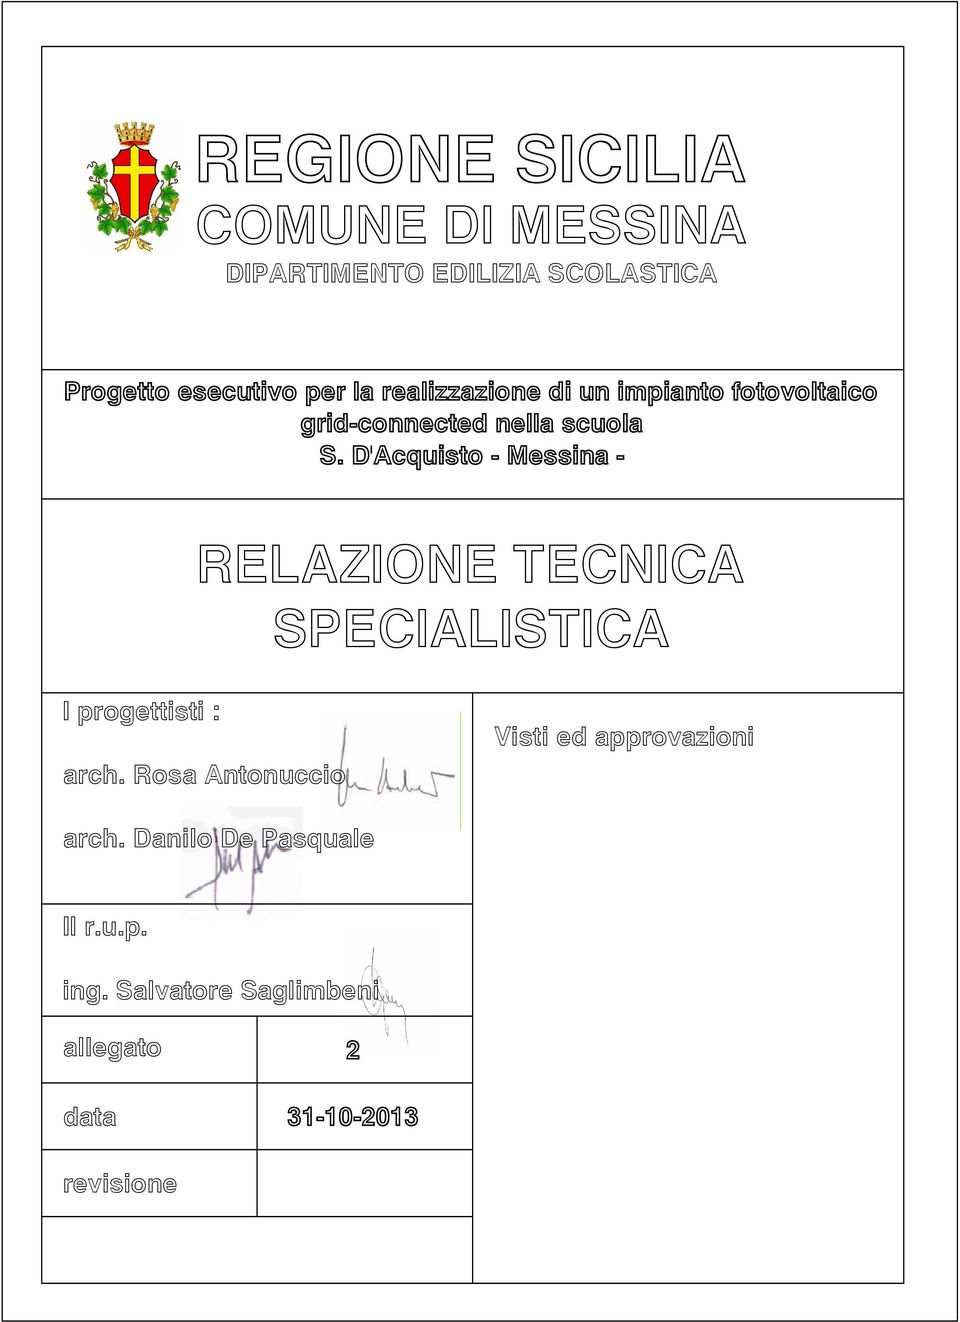 D'Acquisto - Messina - RELAZIONE TECNICA SPECIALISTICA I progettisti : arch.